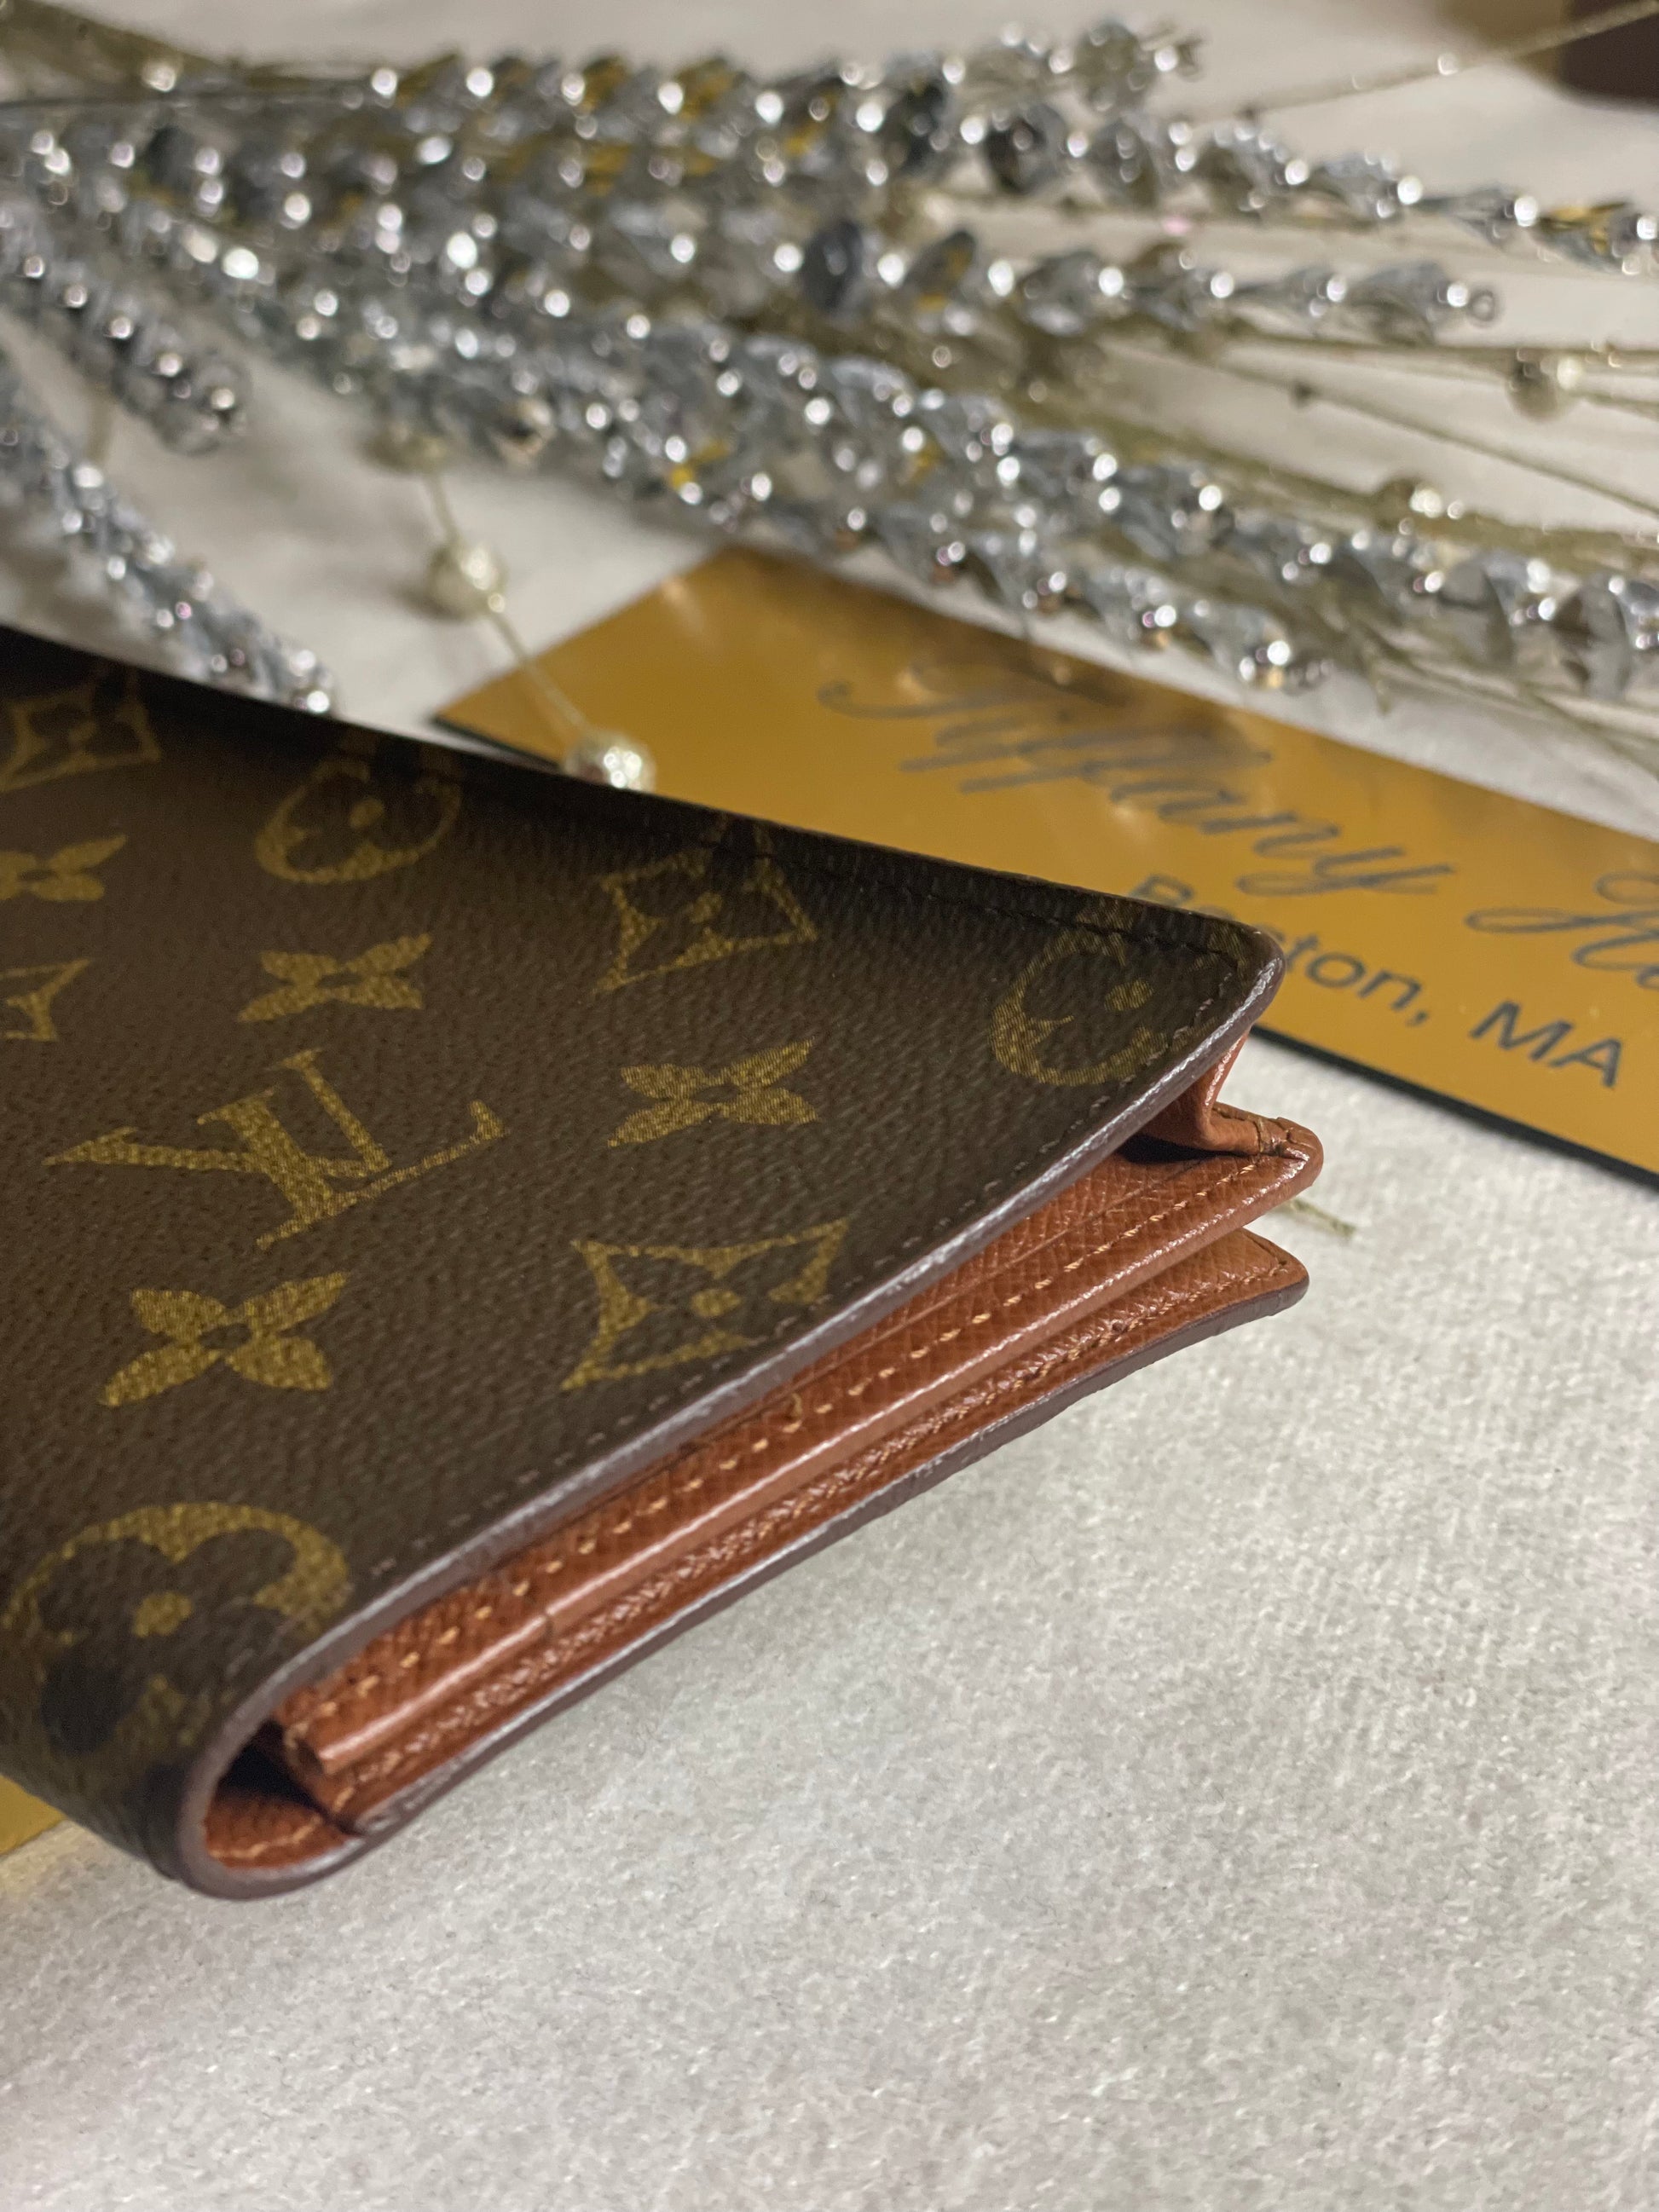 Louis Vuitton, Bags, Authentic Louis Vuitton Checkbook Wallet